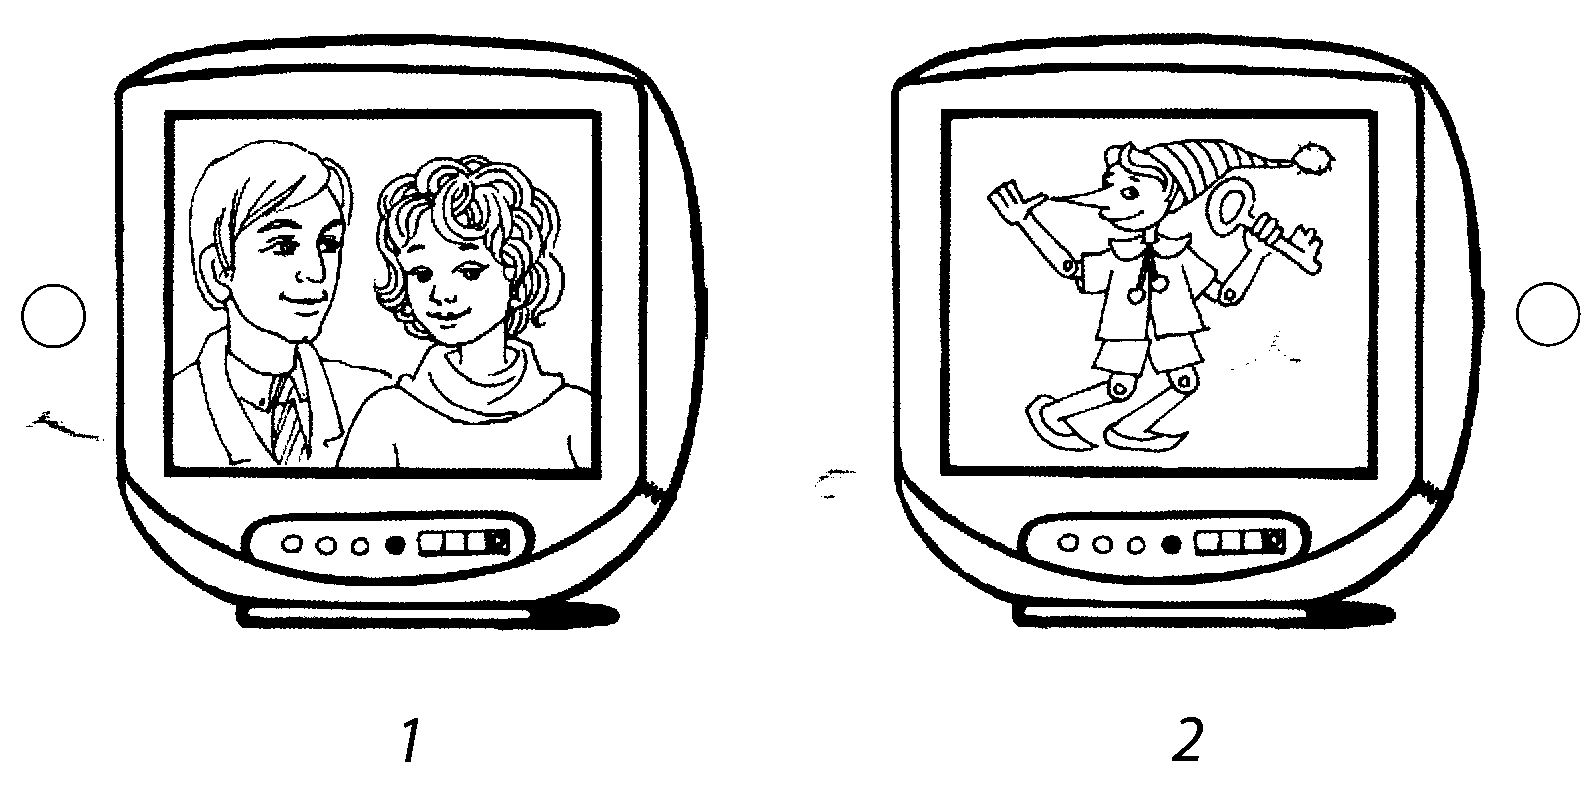 Телевизор картинка для детей раскраска